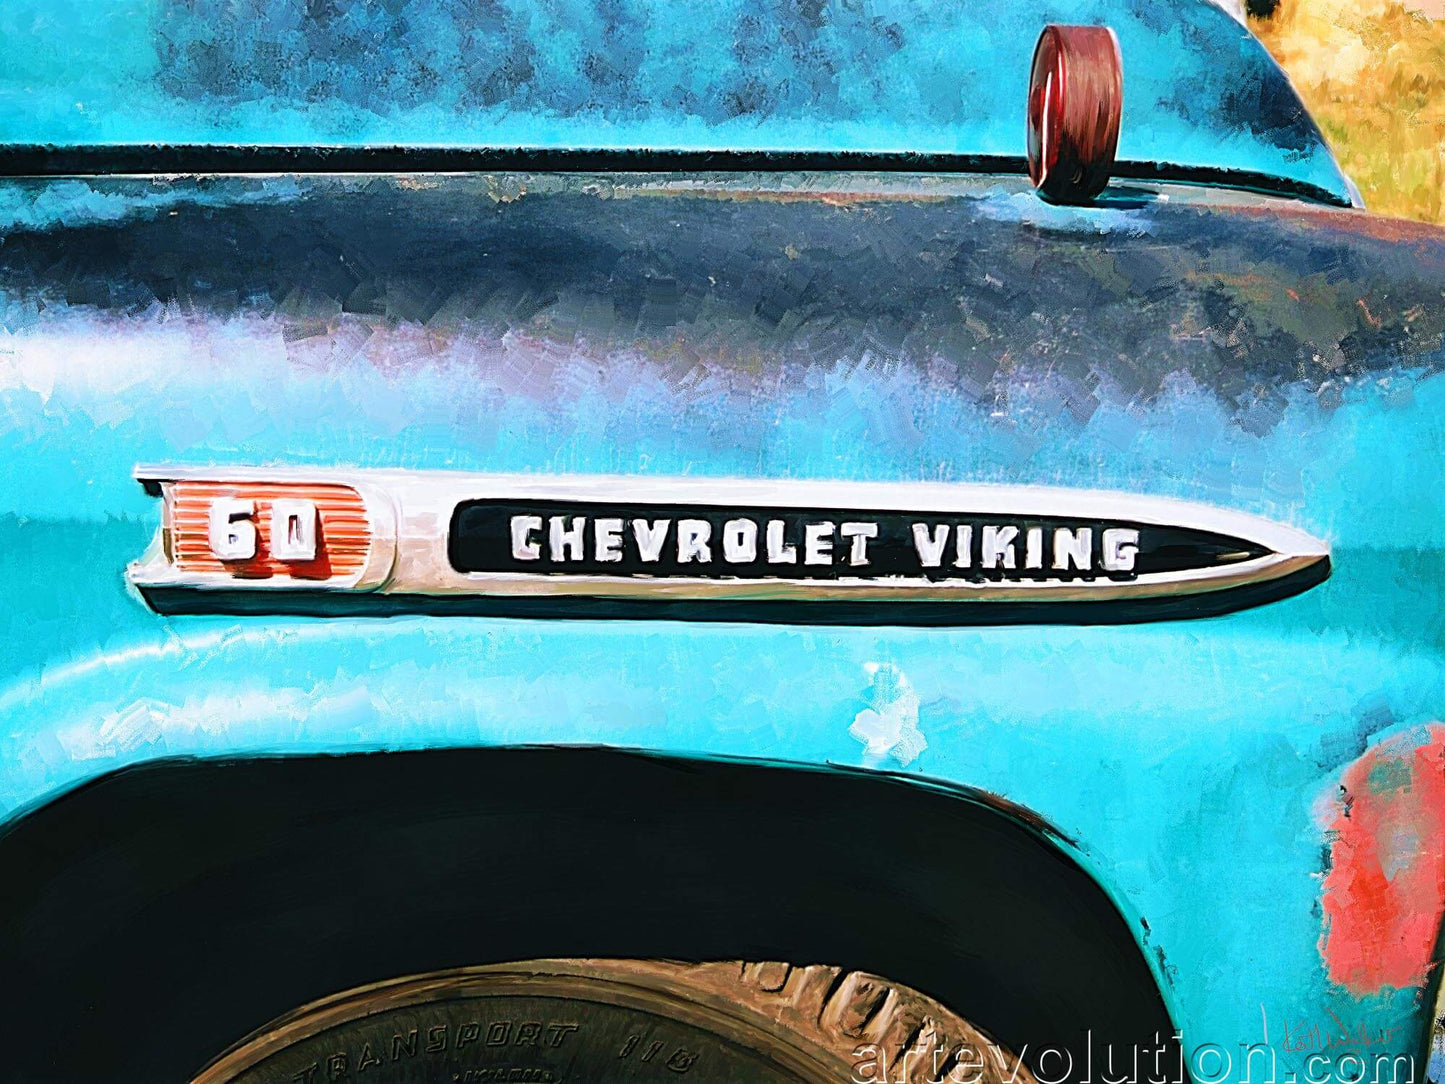 Chevrolet Viking